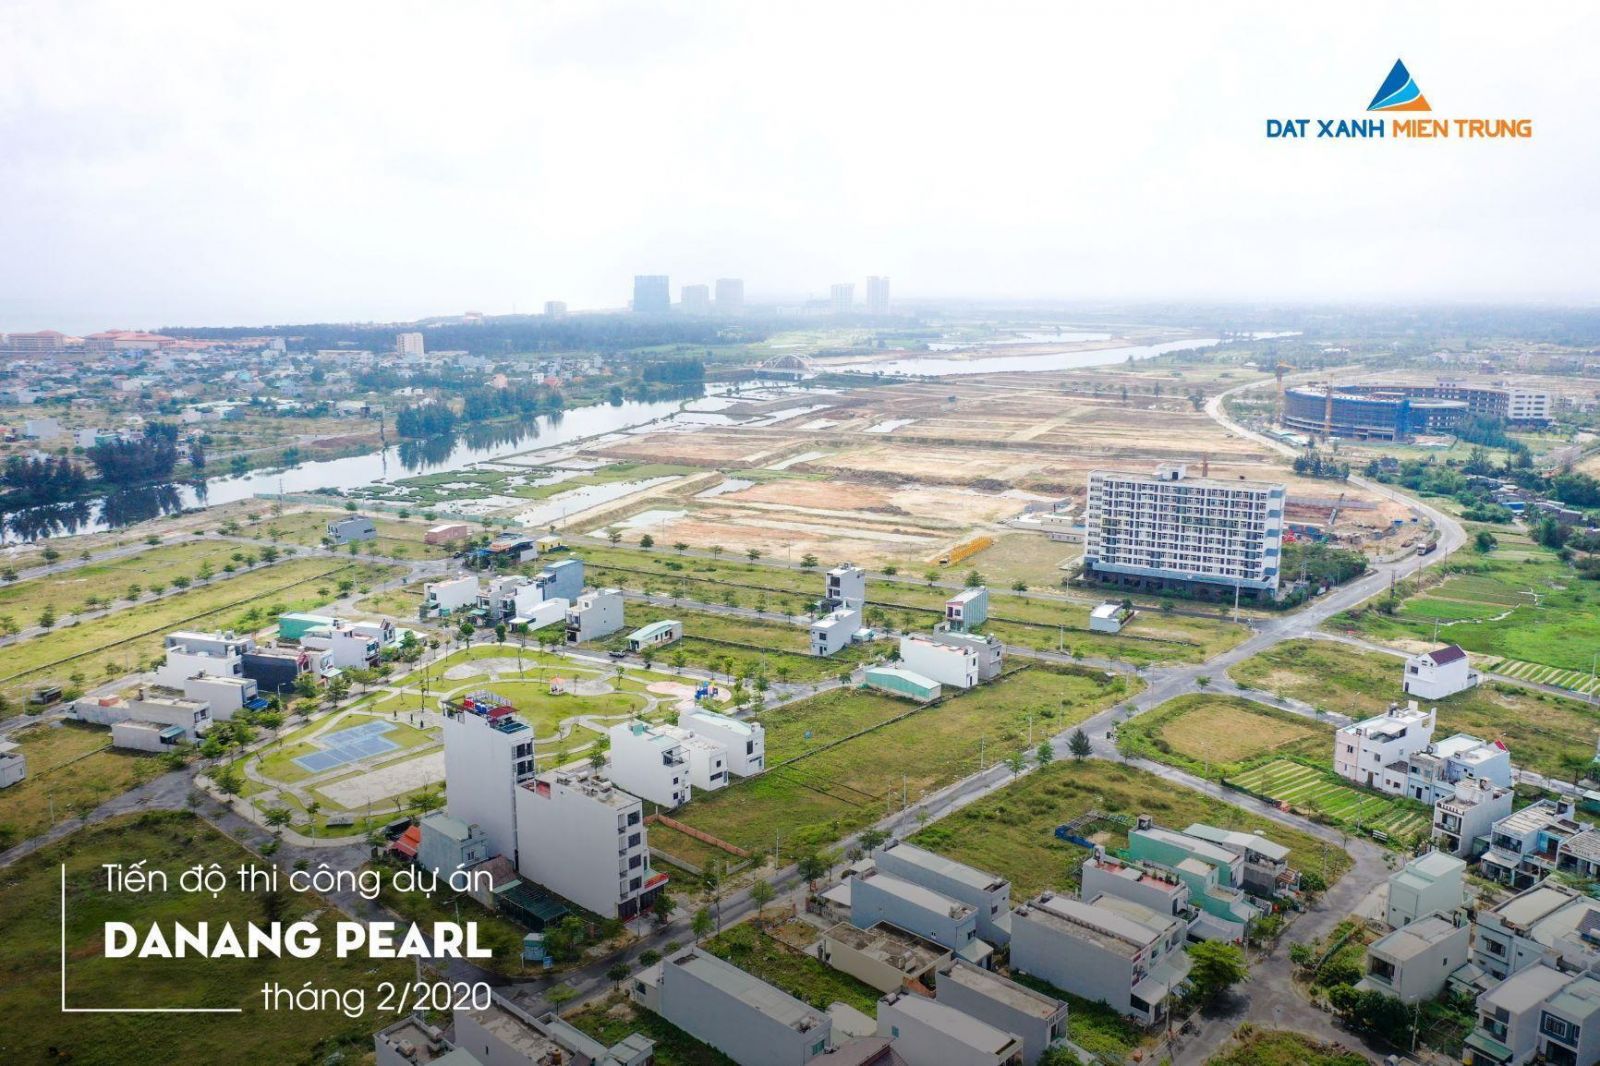 [GÓC CẬP NHẬT] DỰ ÁN DANANG PEARL THÁNG 2/2020 - Viet Nam Smart City